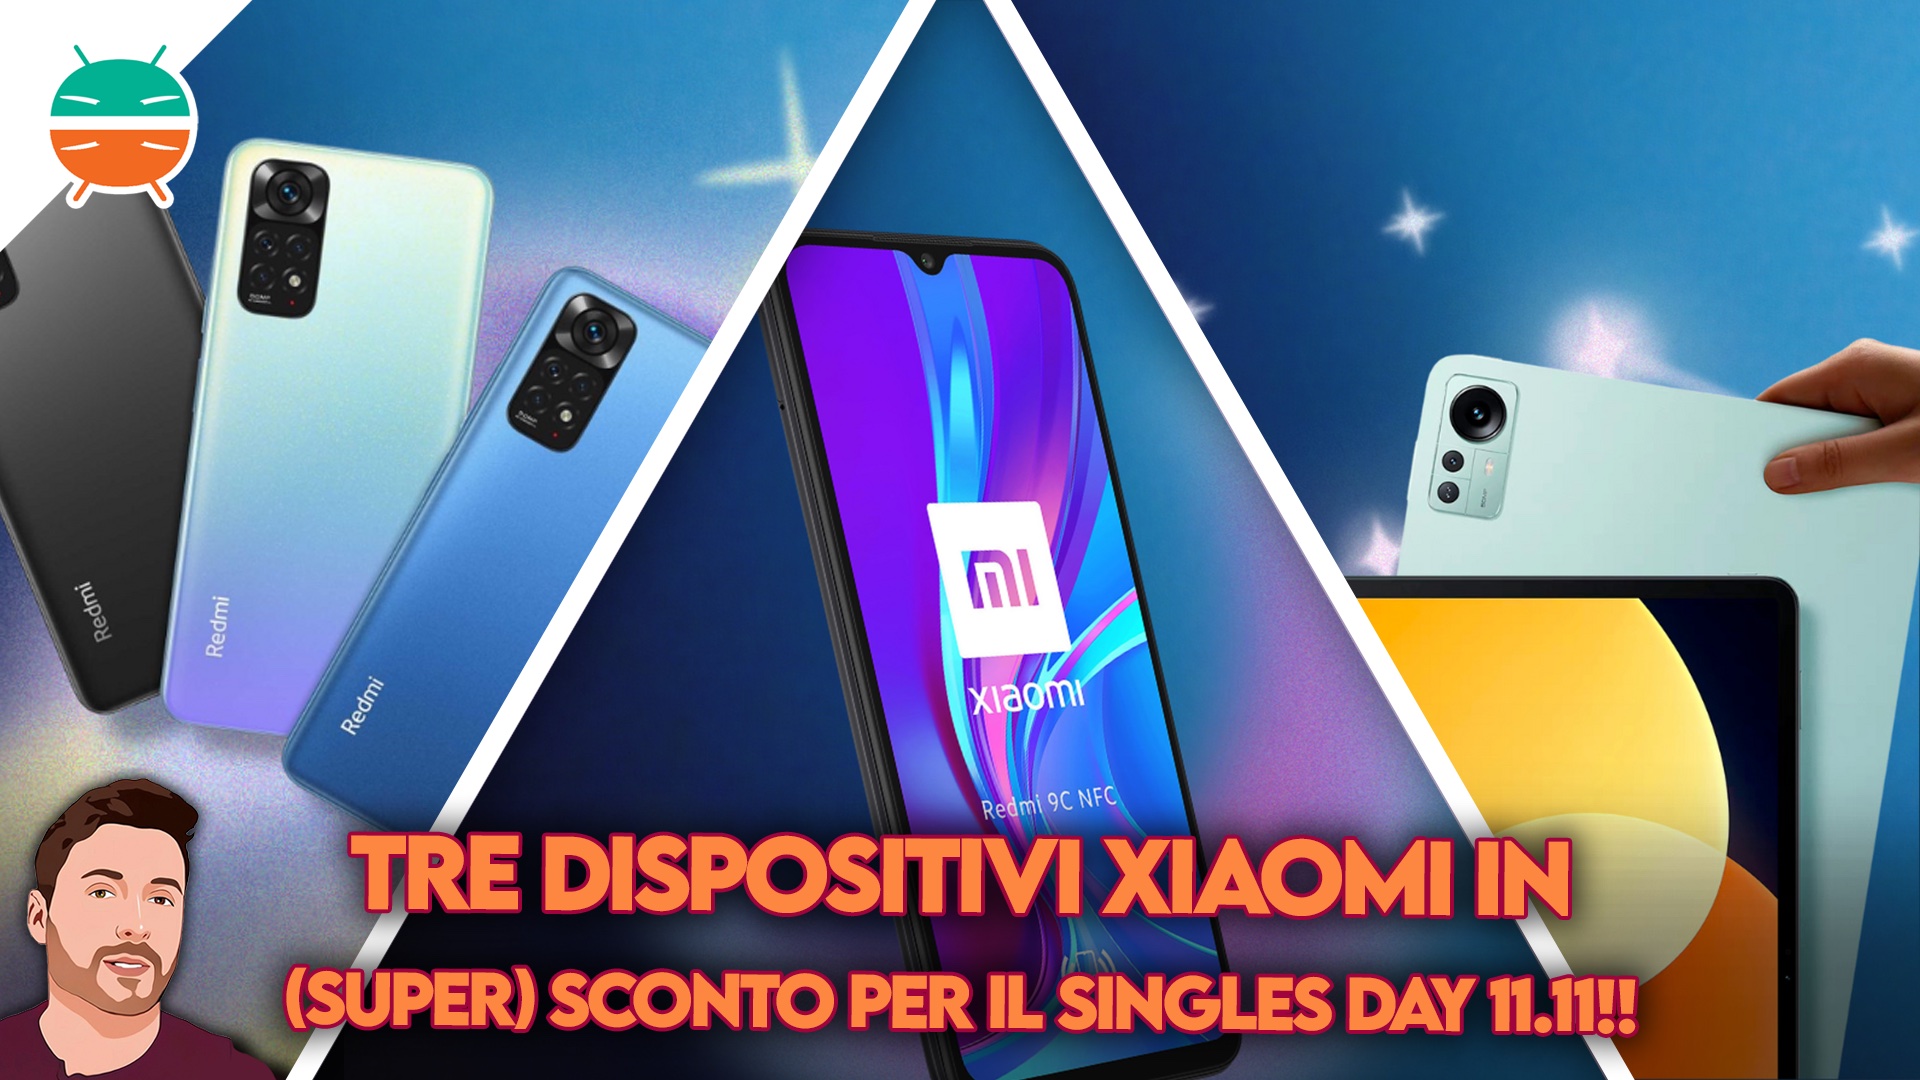 Migliori sconti xiaomi ebay amazon singles day 11 11 xiaomi pad 5 redmi note 11 redmi 9c sconto offerta coupon italia